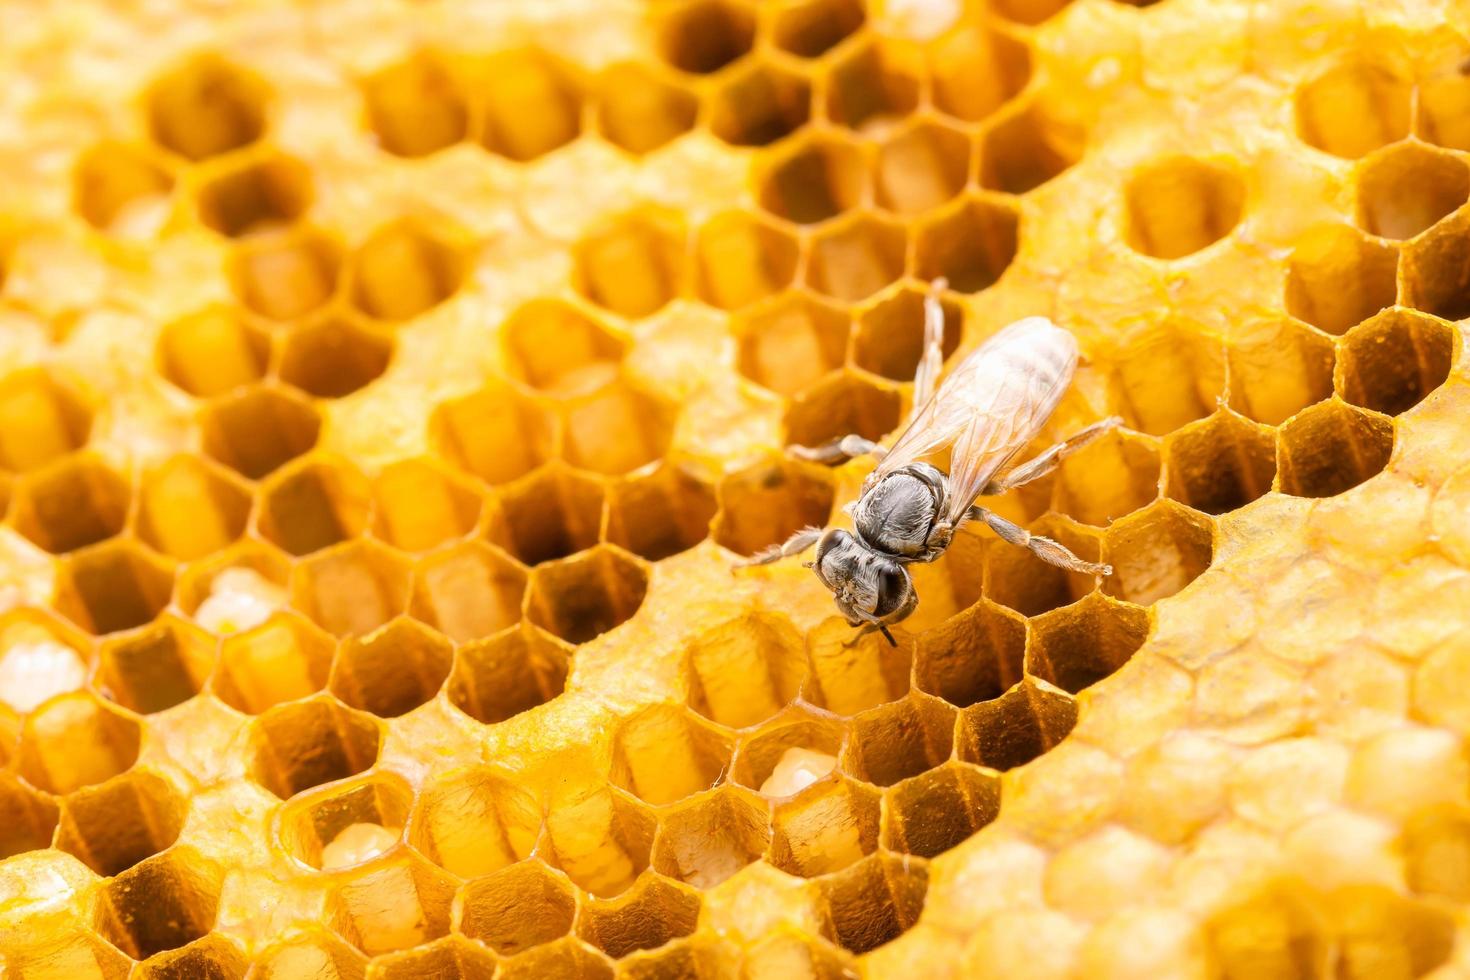 gruppo di api su riprese in studio a nido d'ape. concetto di cibo o natura foto